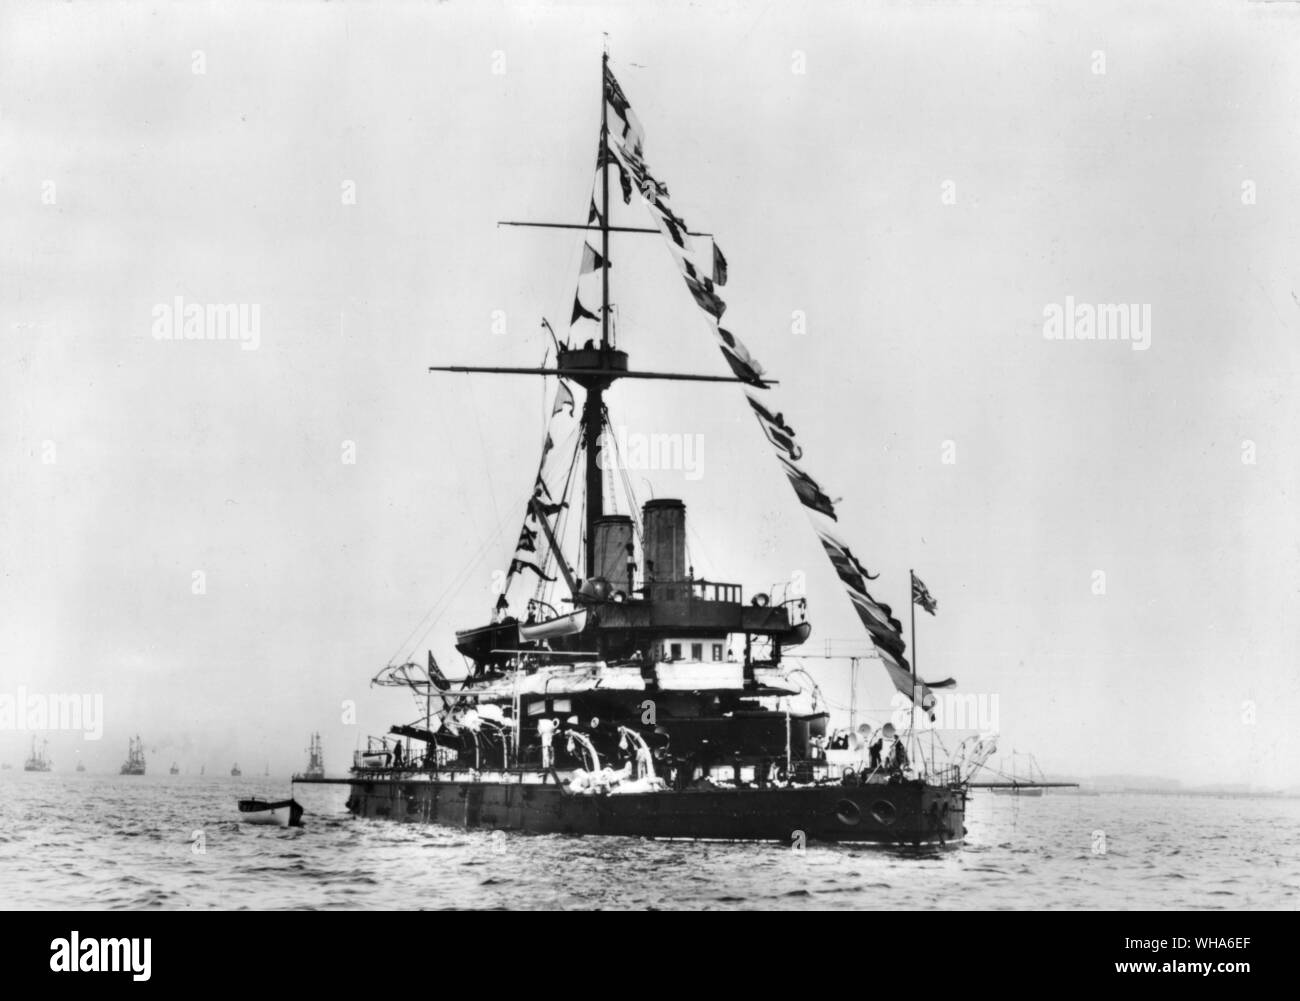 Le HMS dévastation. Lancé en 1871. Ici en 1897 au large de Southend, elle est habillée pour la participation à des célébrations du Jubilé de diamant de la reine Victoria. 1908 rebutée Banque D'Images